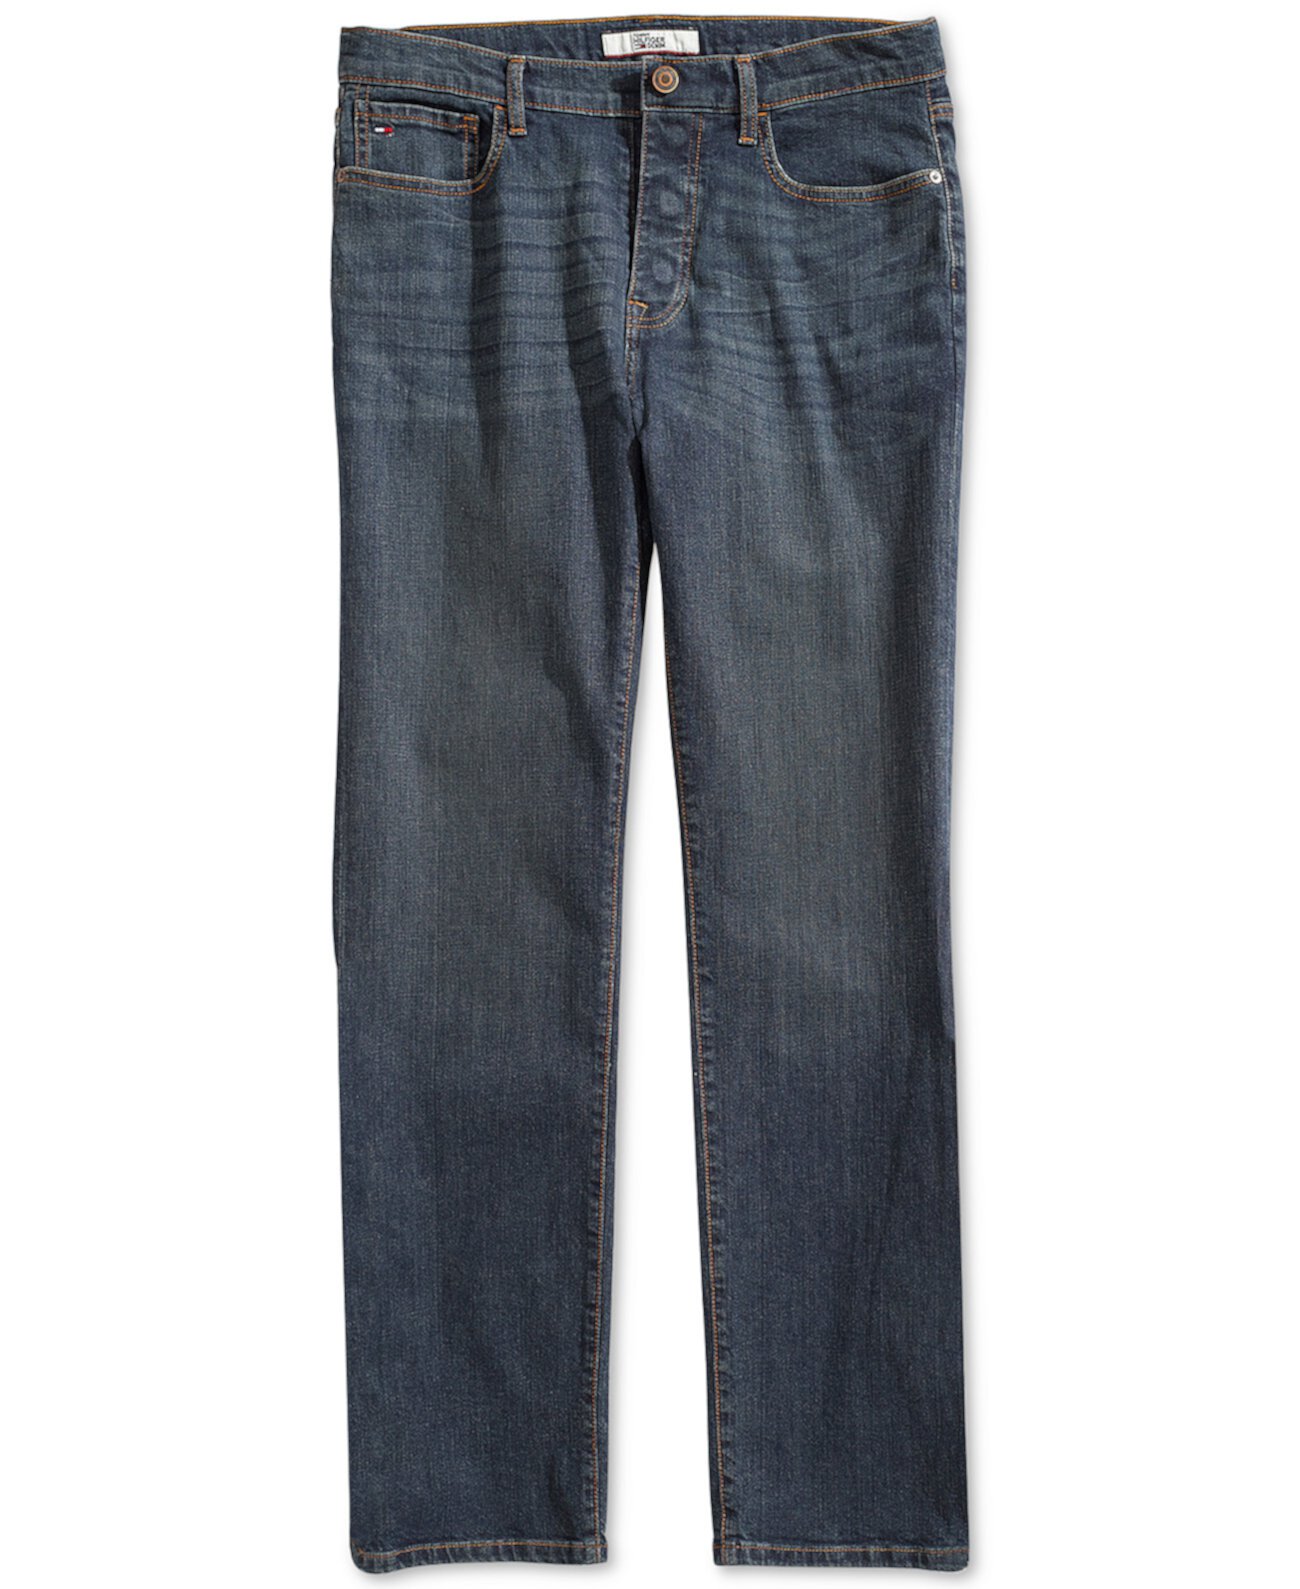 Мужские свободные джинсы Oscar с магнитной ширинкой Tommy Hilfiger